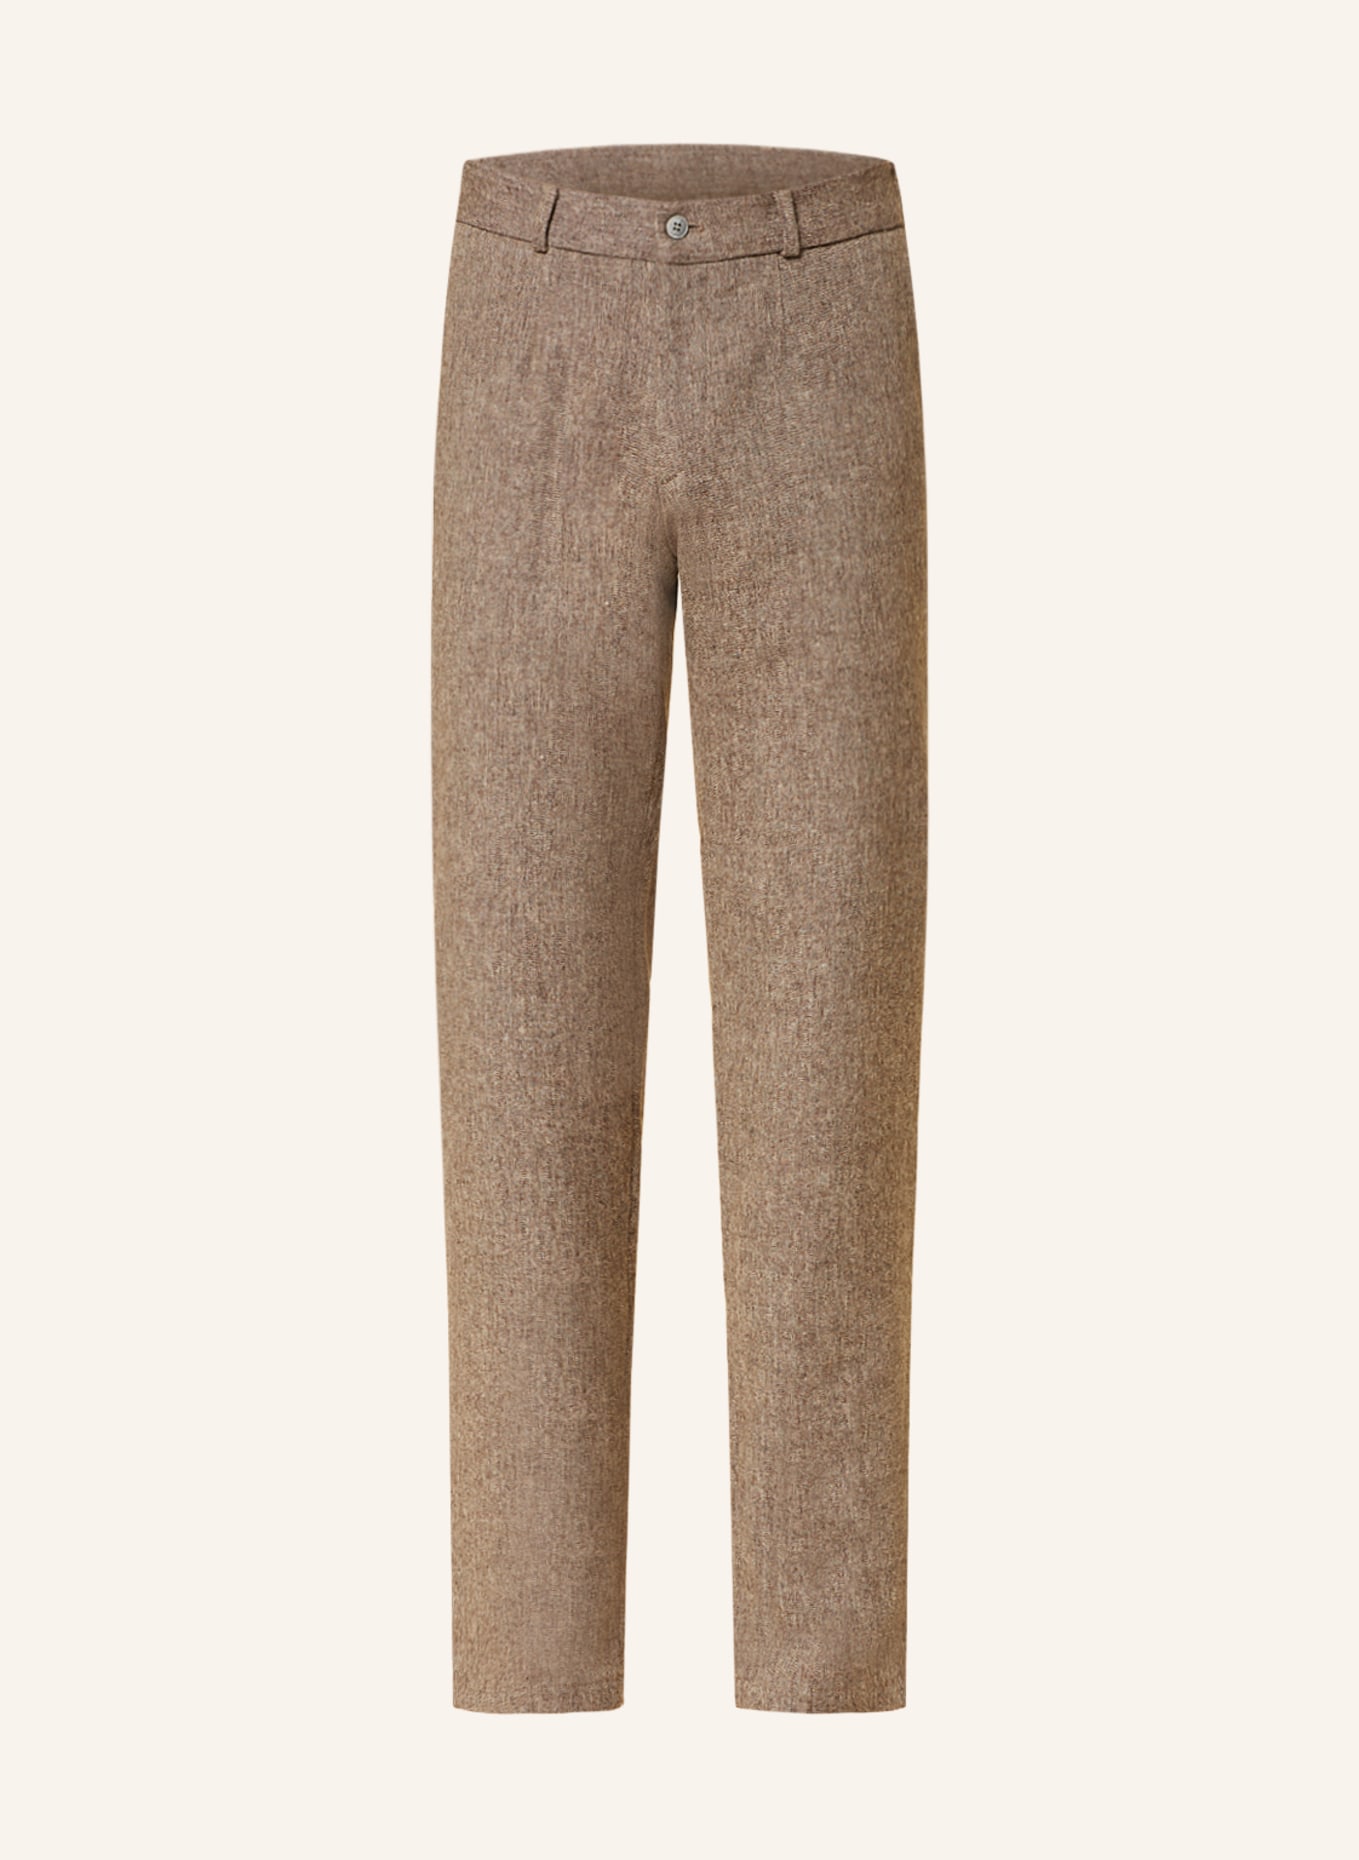 PAUL Suit trousers slim fit, Color: 270 CAMEL (Image 1)